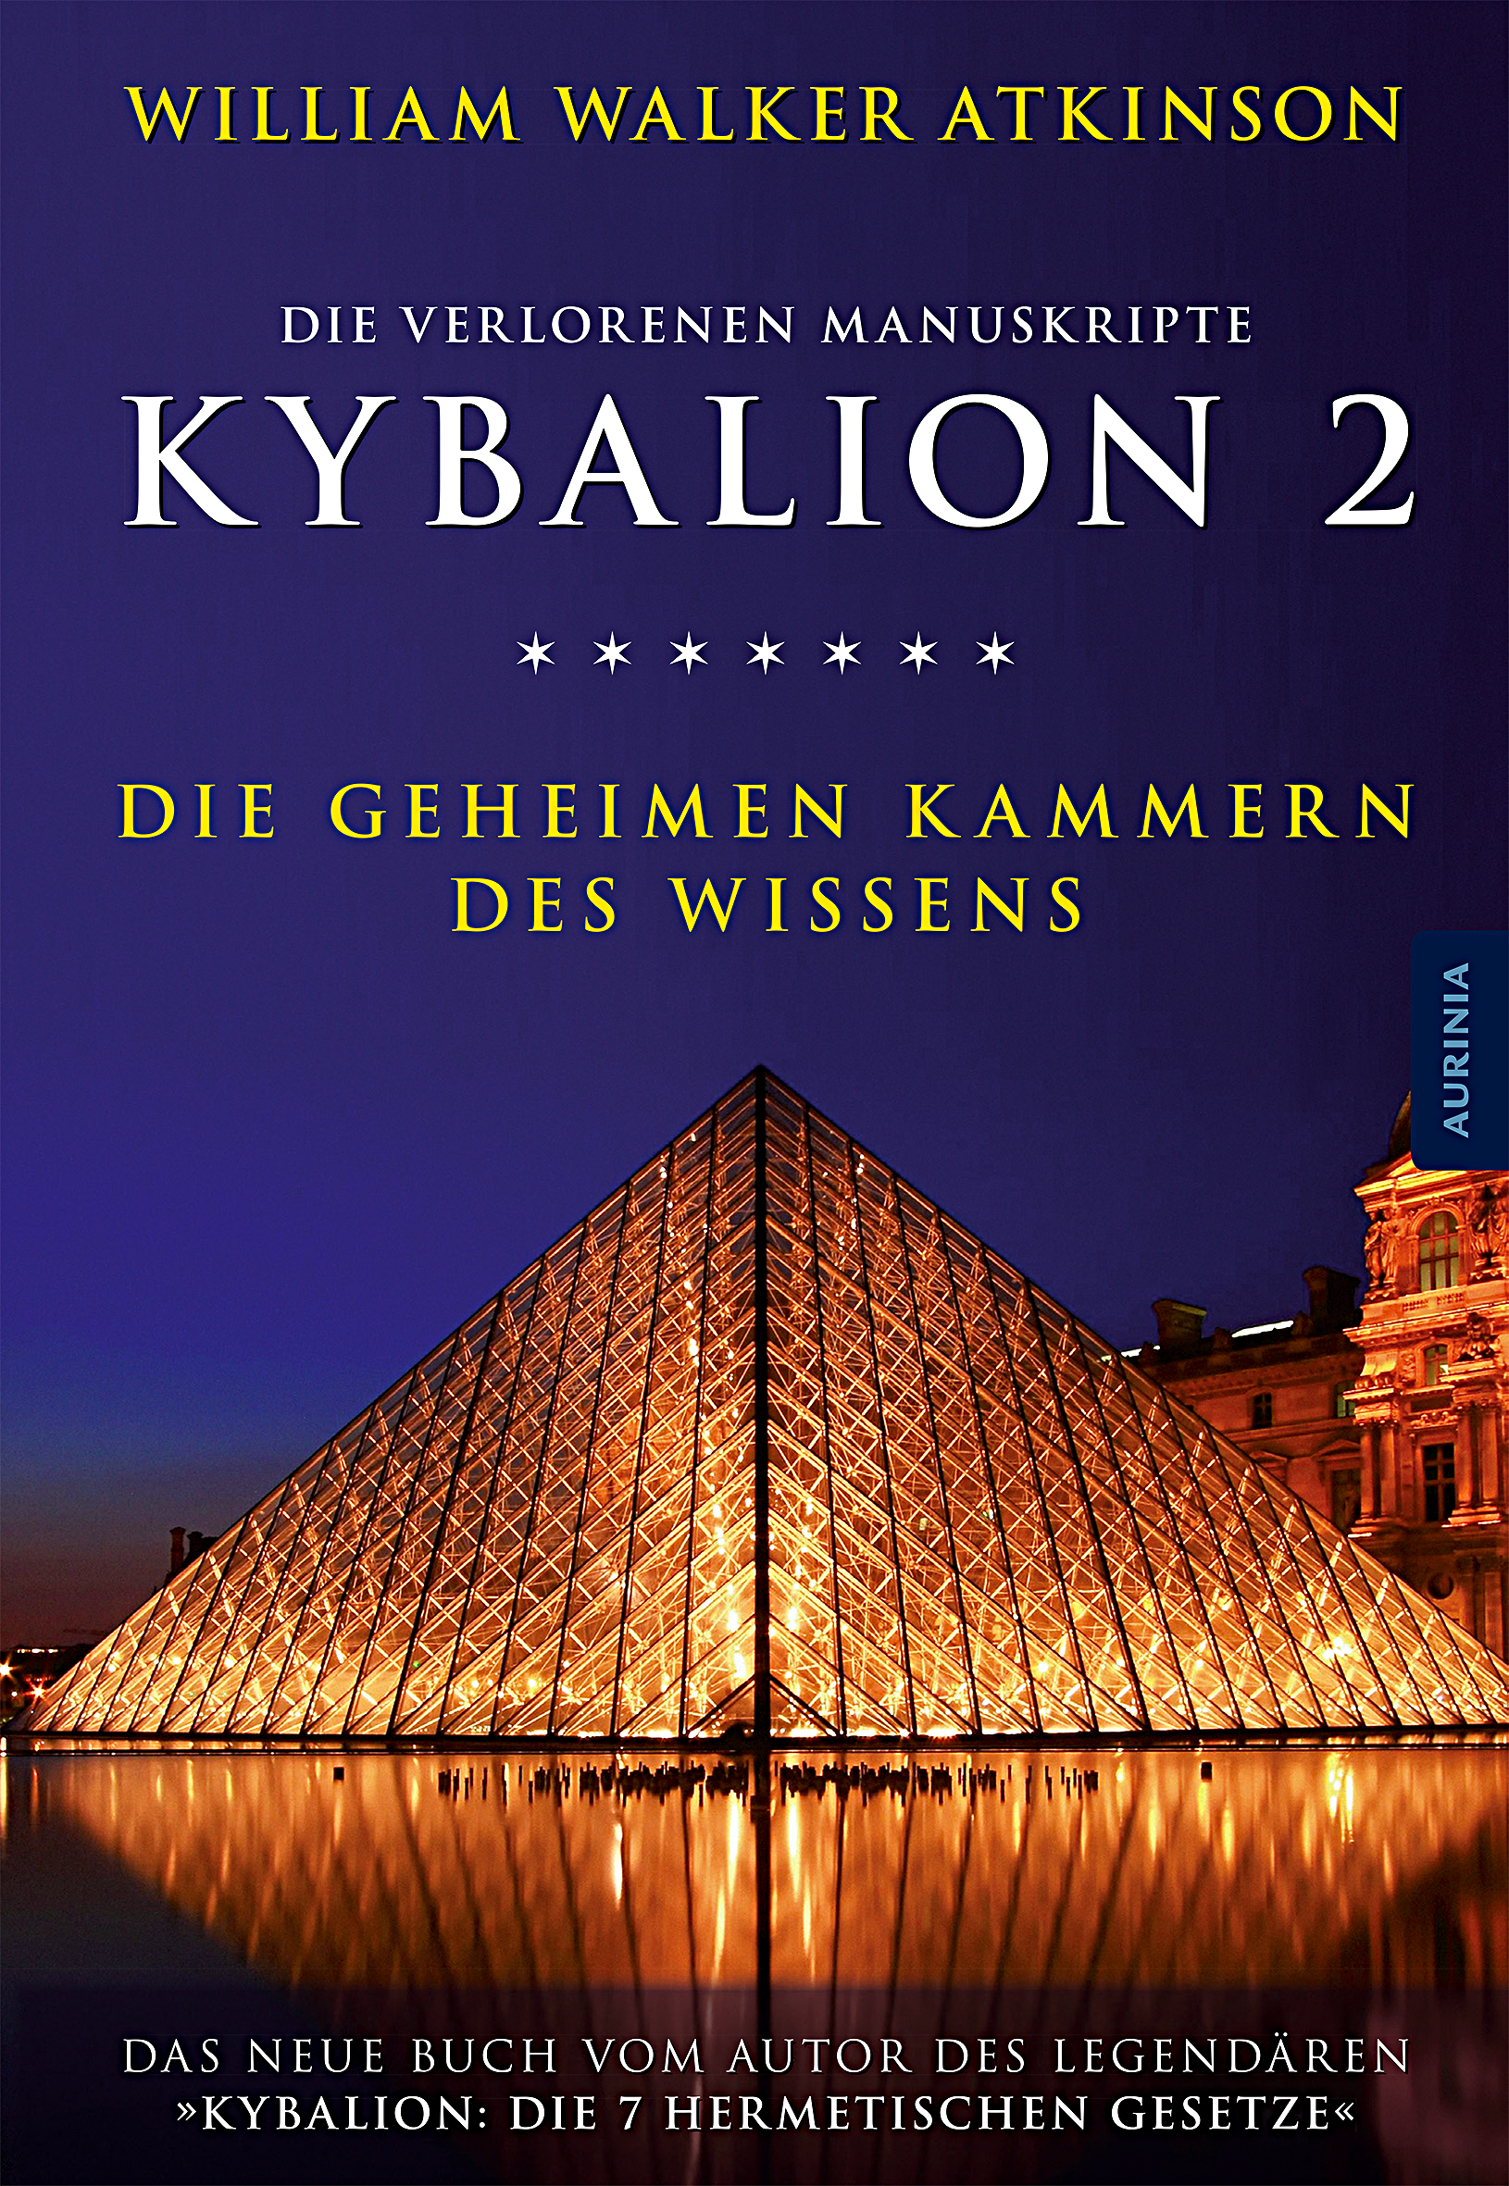 Kybalion 2 – Die geheimen Kammern des Wissens